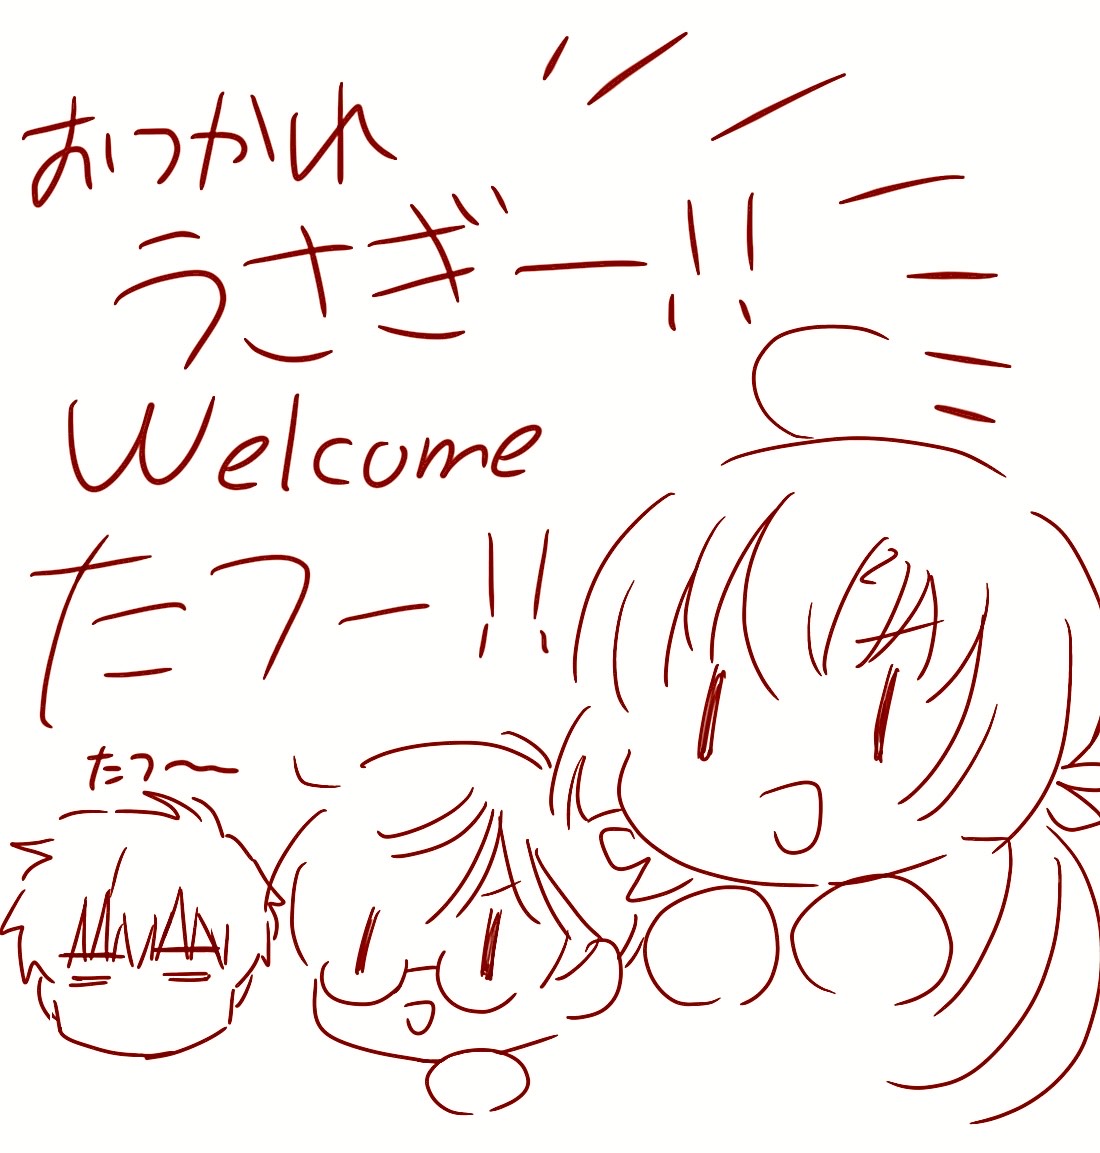 描き納め!!!
『Welcome たつ年!!!!』 